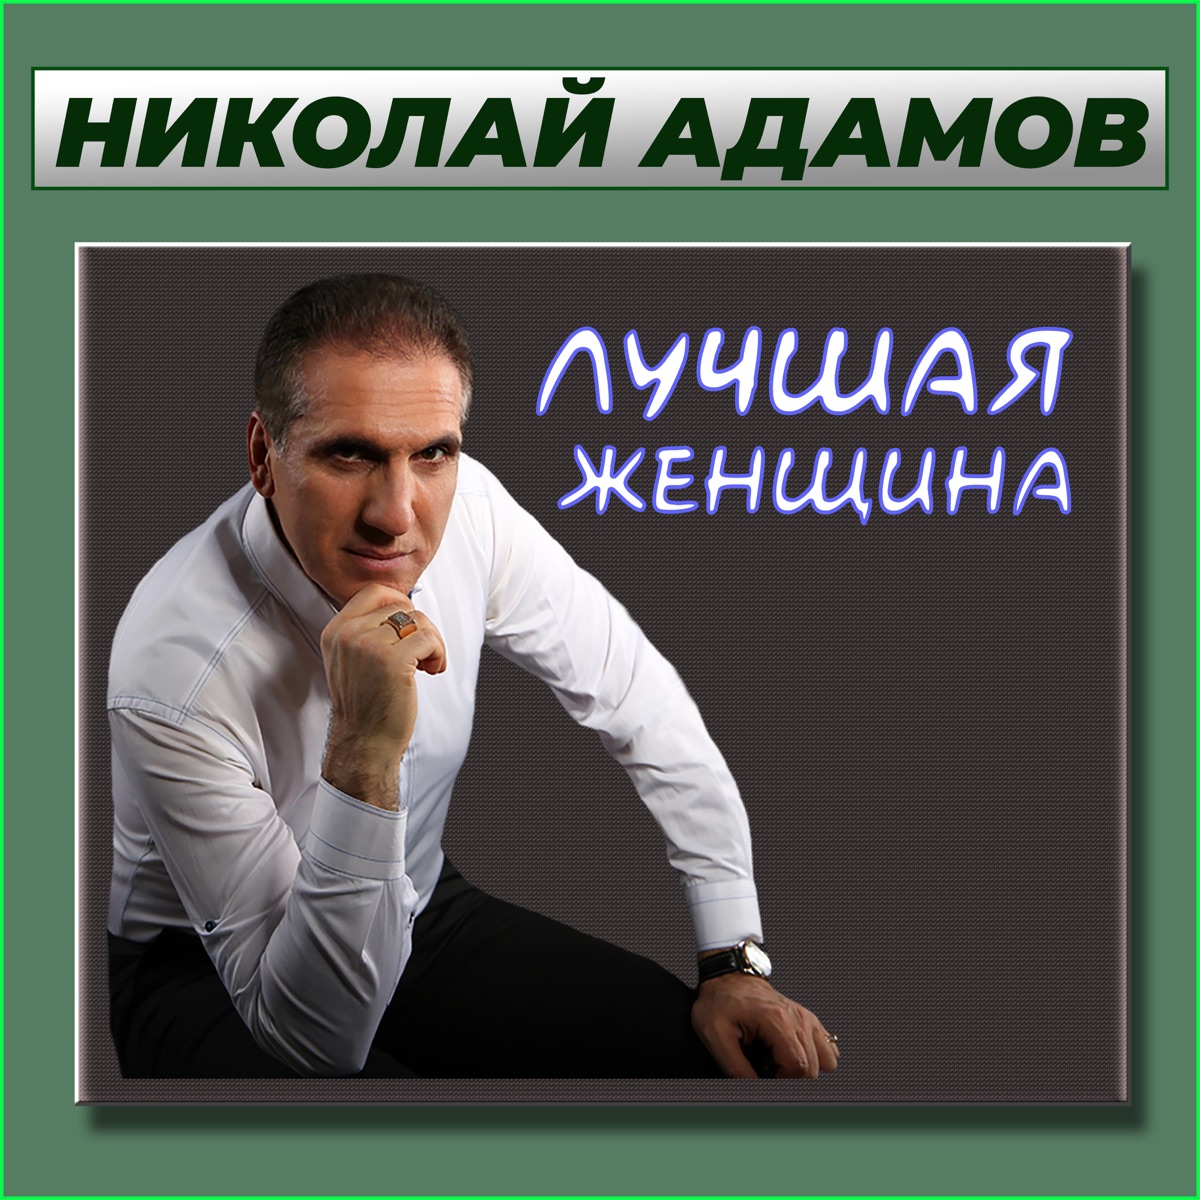 Счастливый случай - Album by Николай Адамов - Apple Music